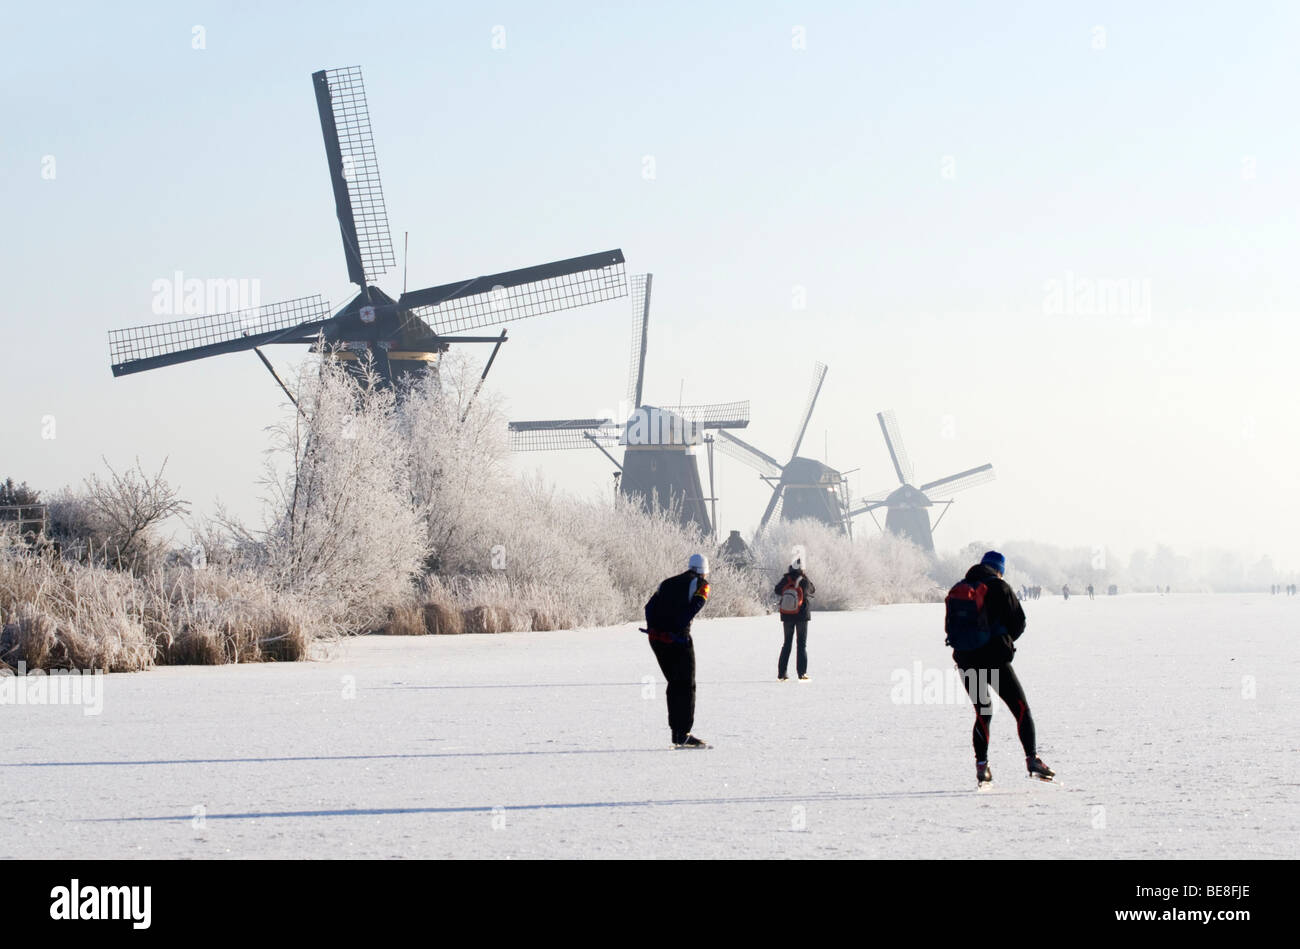 Schaatsers schaatsen langs de molens van Kinderdijk; pattinatori pattino lungo i mulini a vento di Kinderdijk Foto Stock